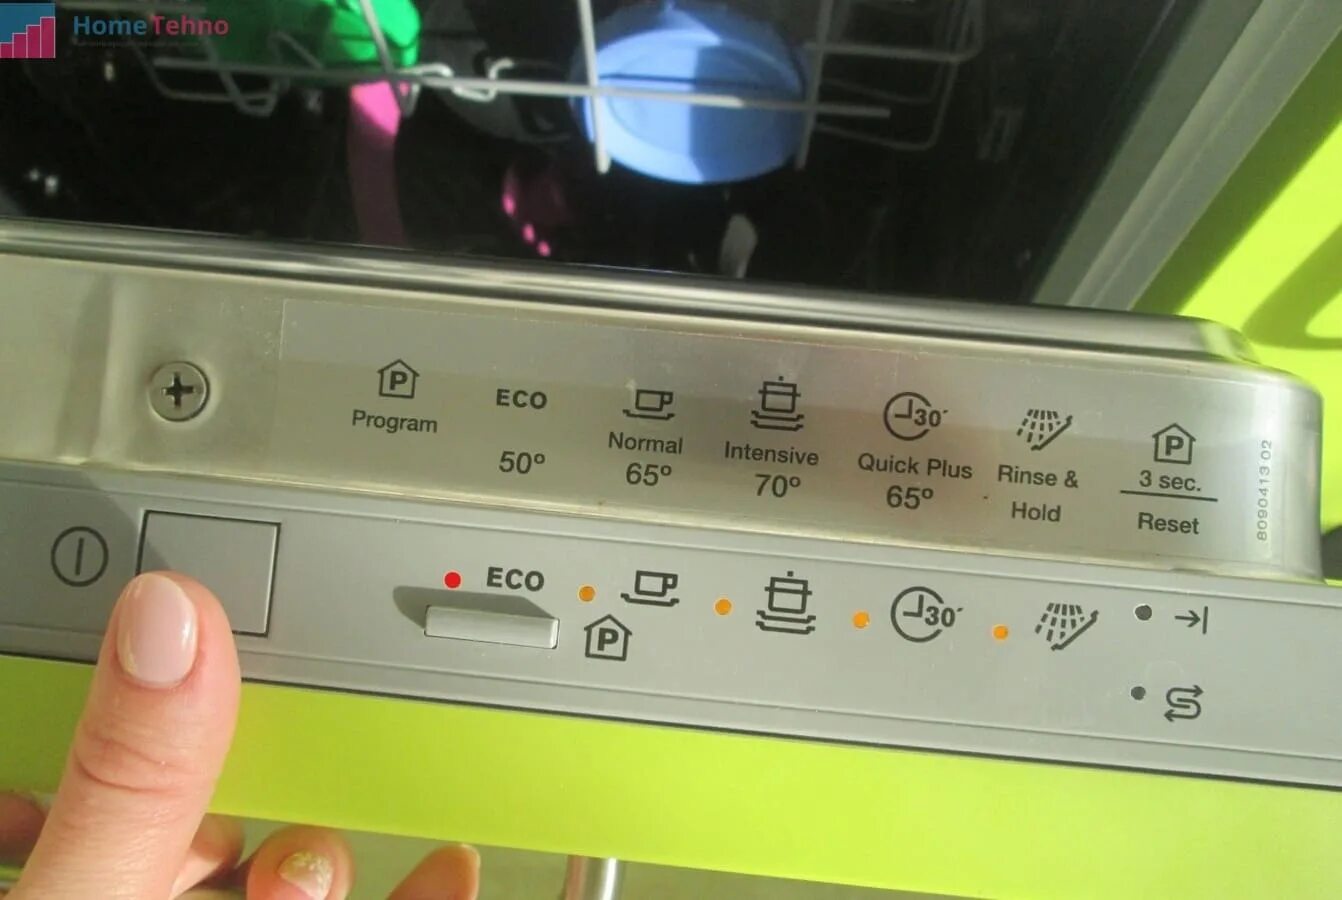 Снежинка на посудомойке. Посудомойка Bosch значки индикаторы. Посудомоечная машина Электролюкс 45 панель управления. Посудомойка Bosch индикатор фильтр. Индикаторы Электролюкс посудомоечной машины Электролюкс.